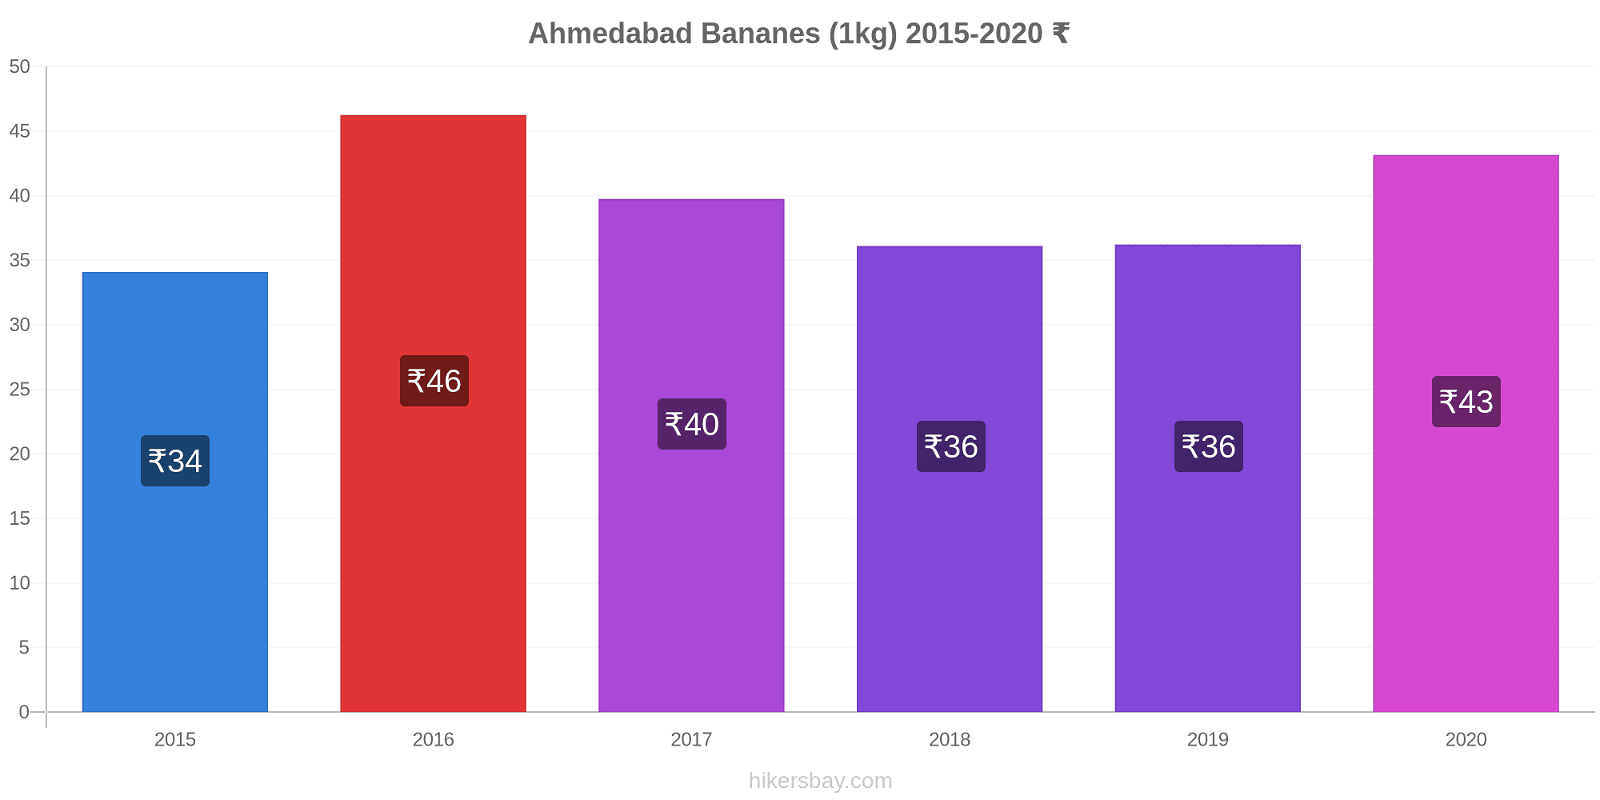 Ahmedabad changements de prix Bananes (1kg) hikersbay.com